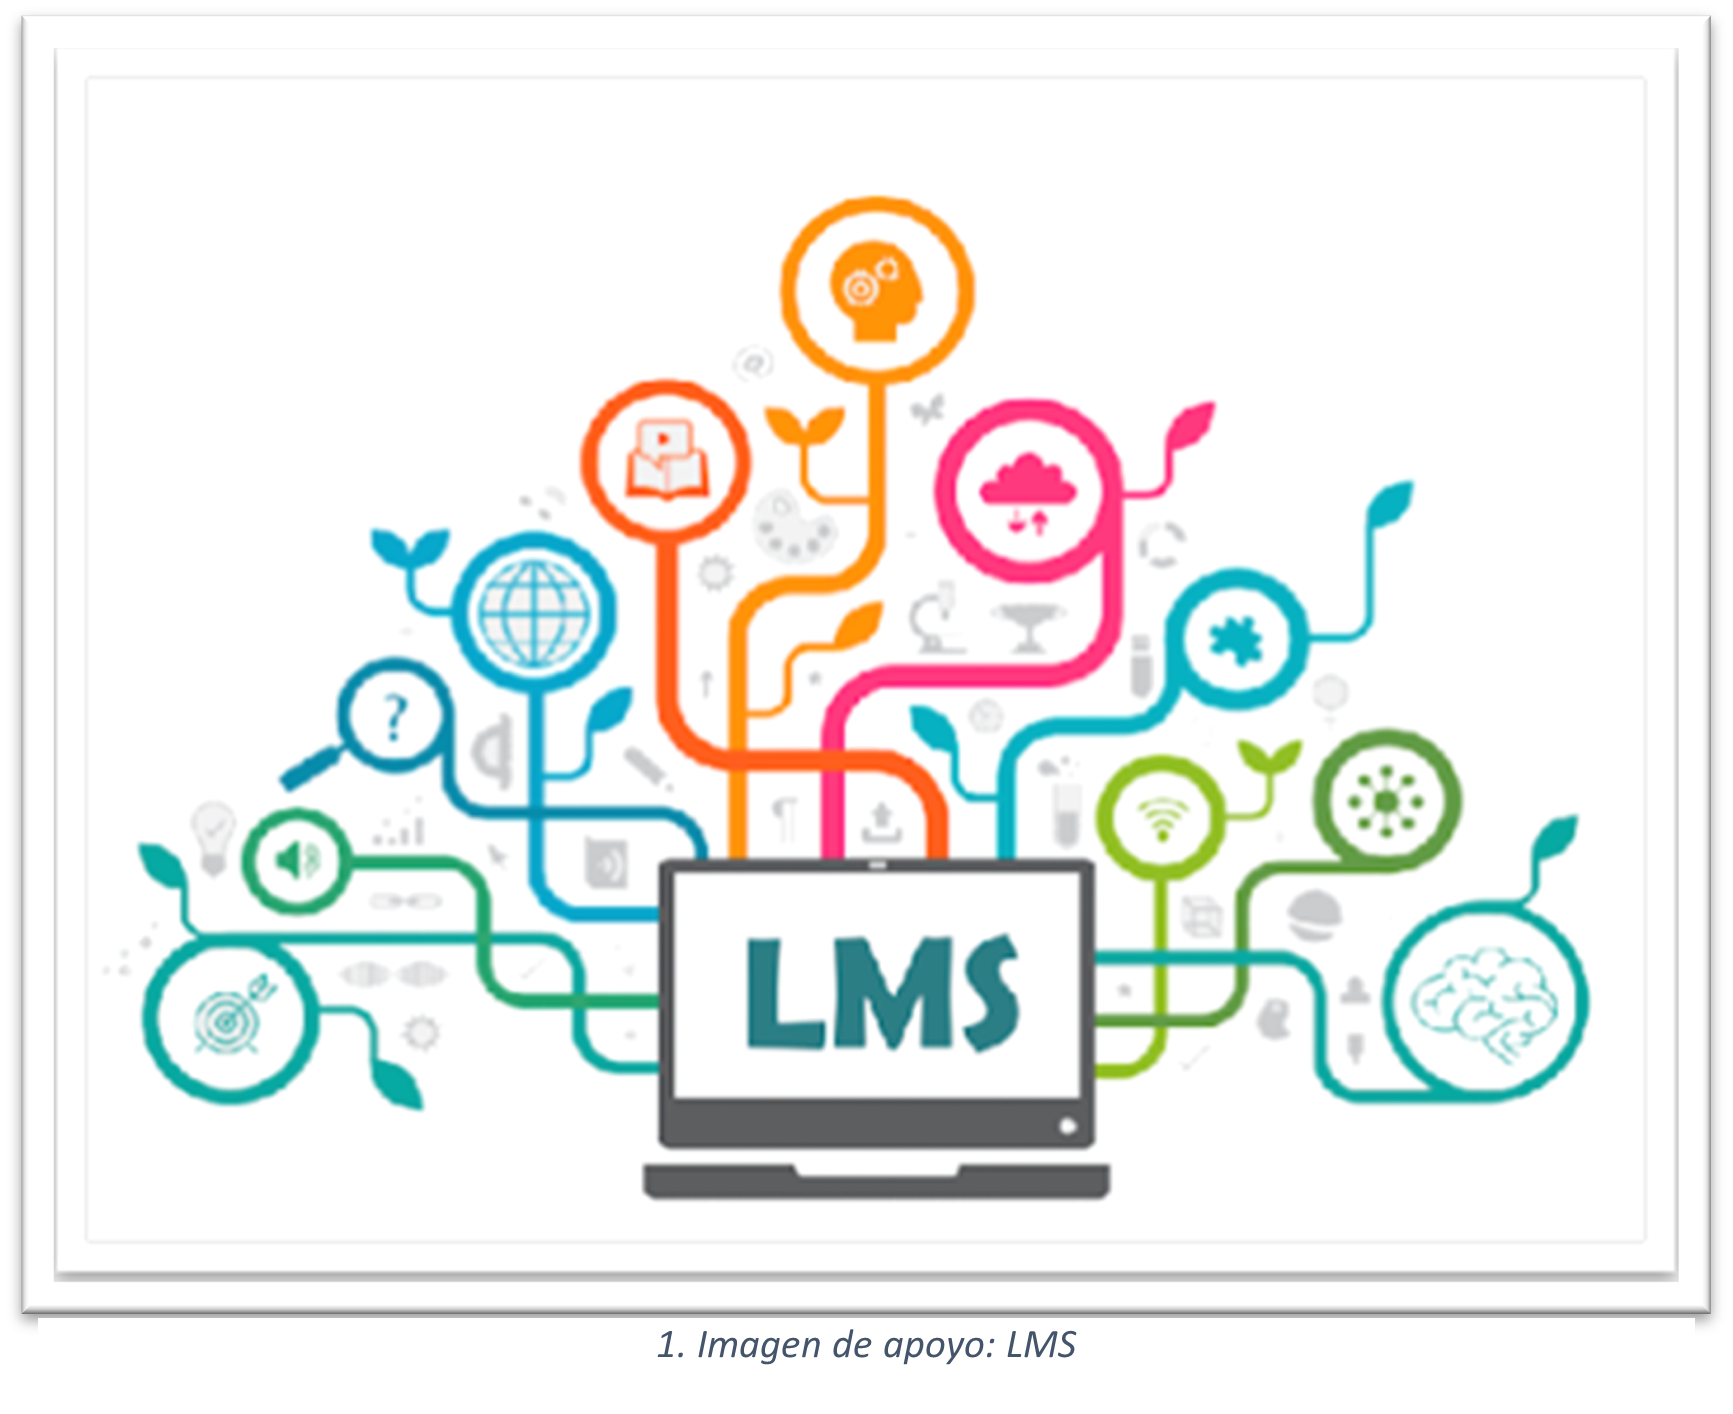 Imagen de apoyo que muestra la representación de un LMS.